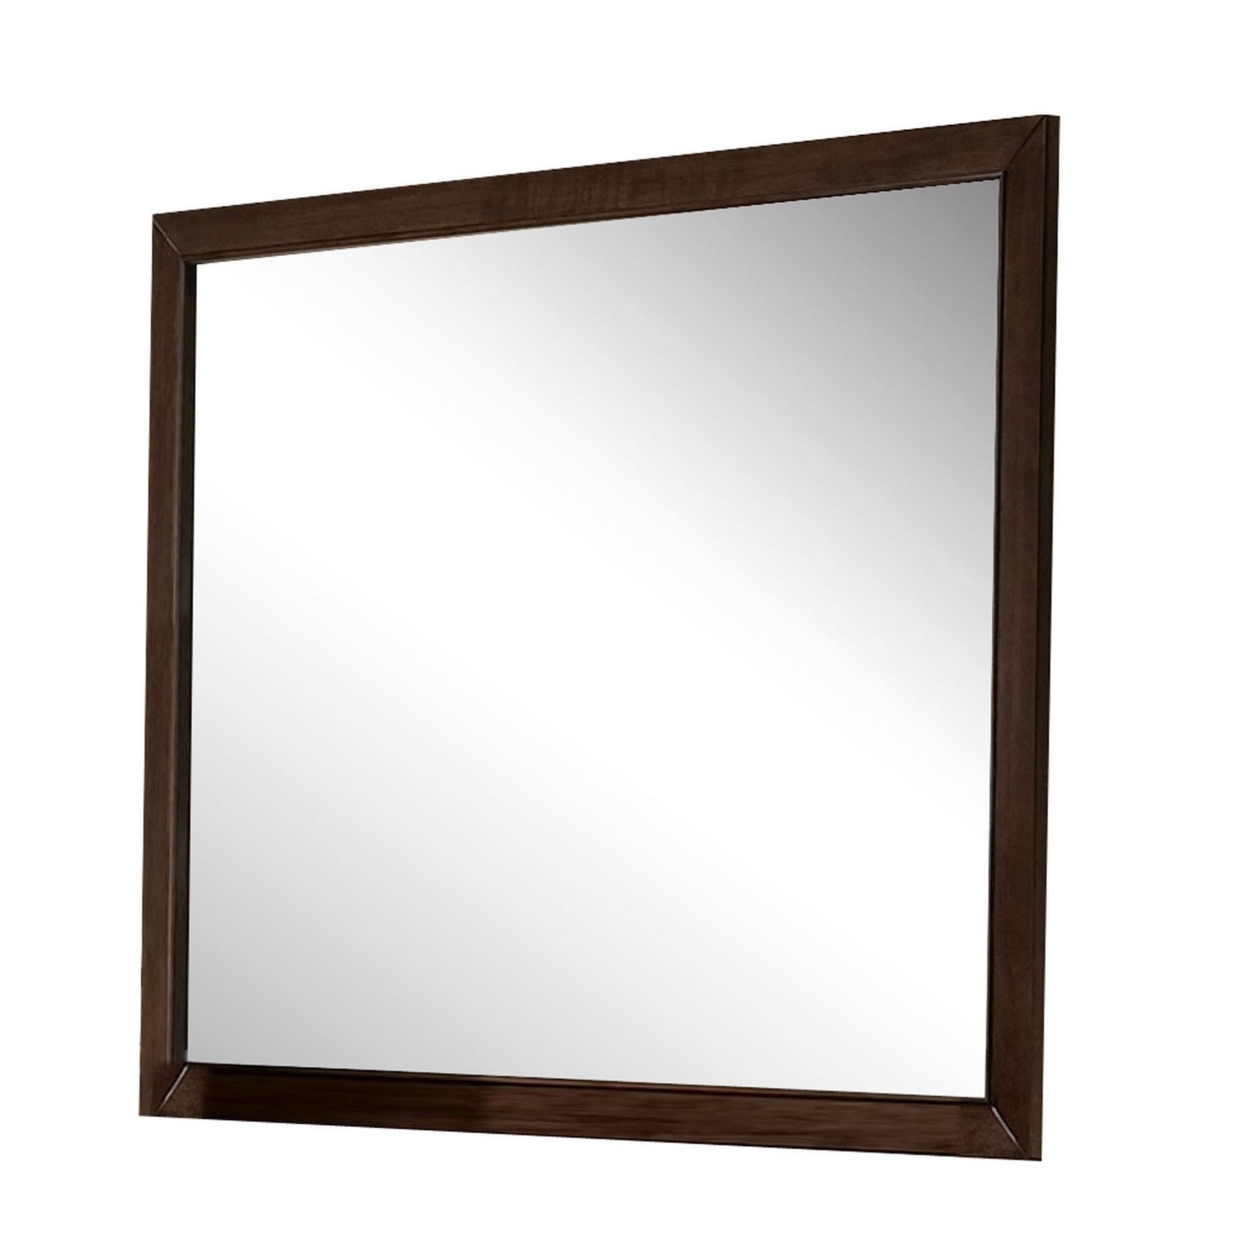 Wooden Frame Mirror, Espresso Brown- Saltoro Sherpi